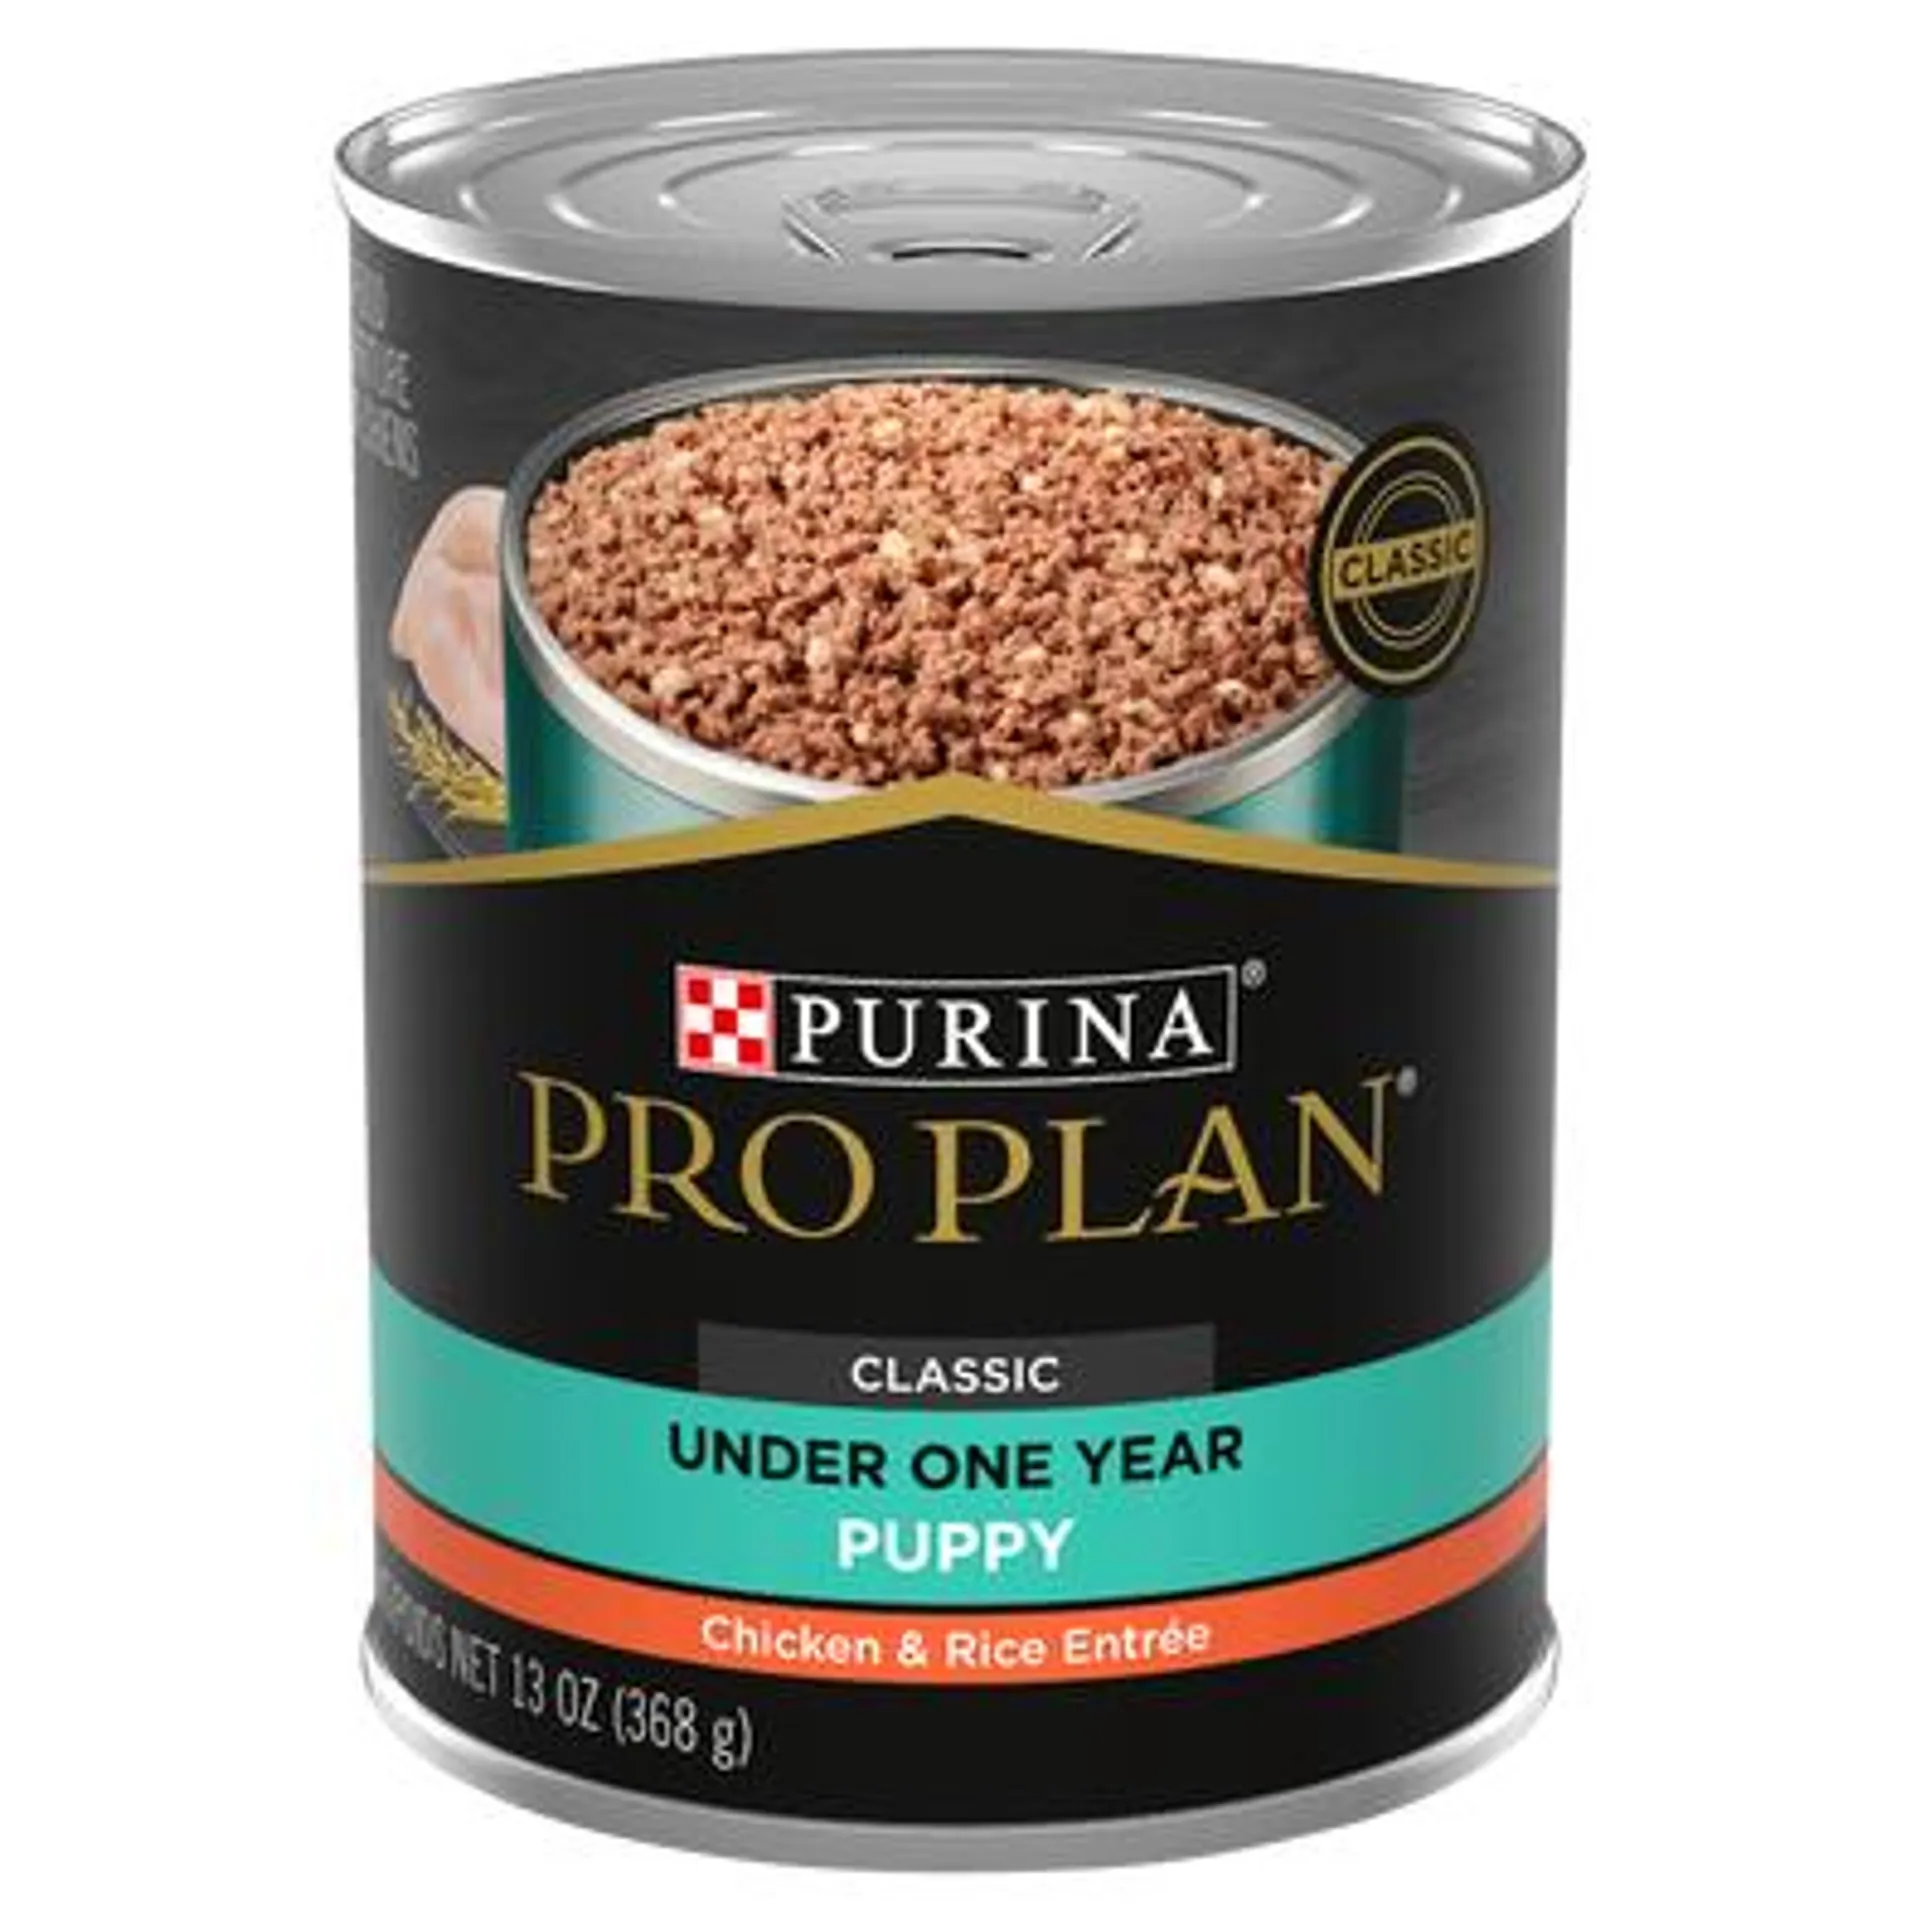 Pro Plan Puppy Chicken & Rice Wet Dog Food